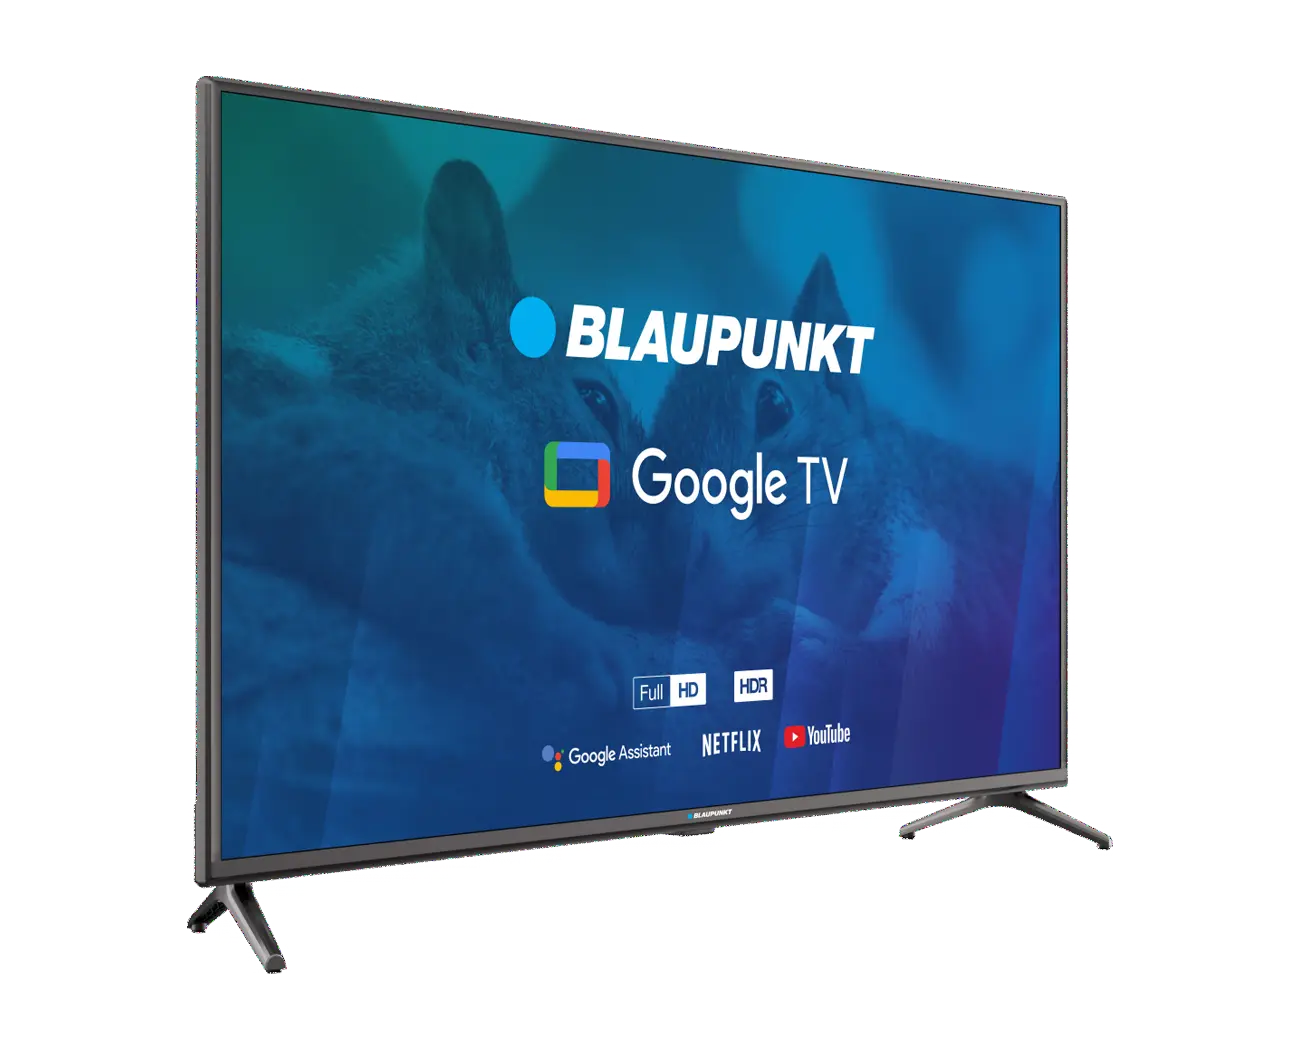 Full HD Google TV 40FBG5000